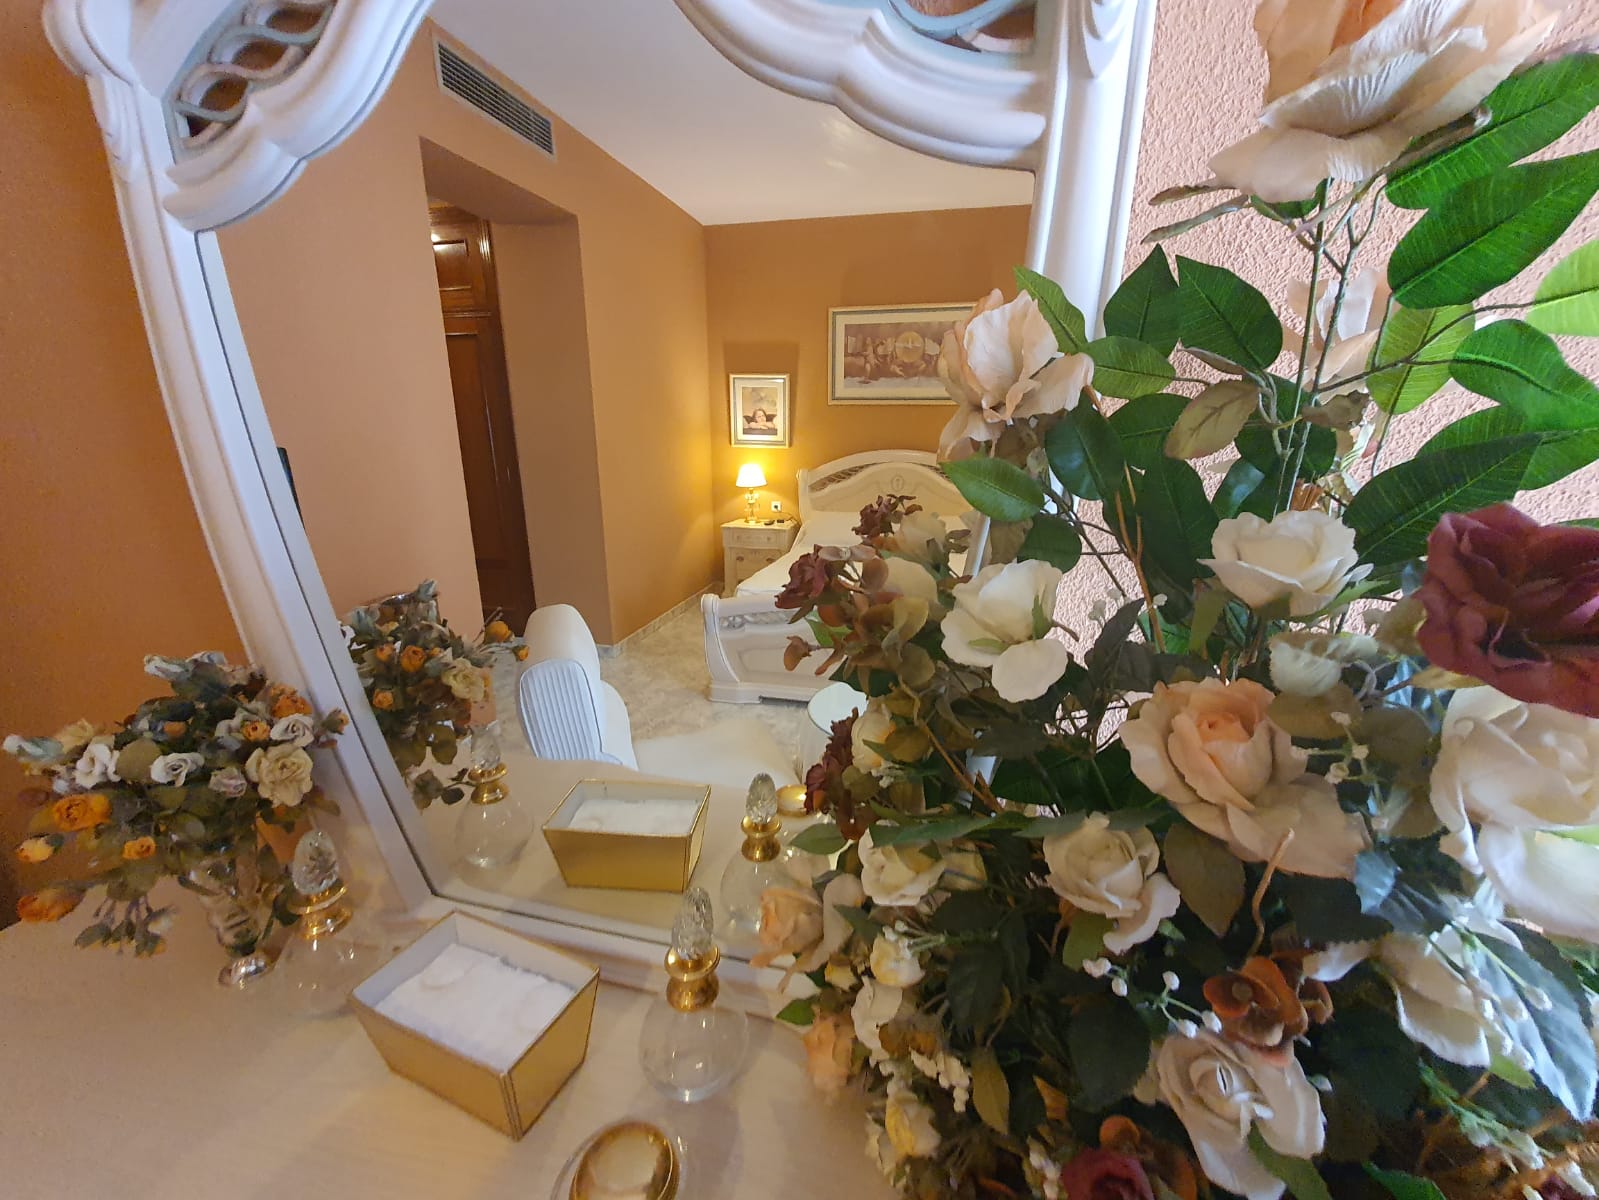 Habitación doble de Hostal Javi, en Belmez, vista desde el espejo decorado con flores.